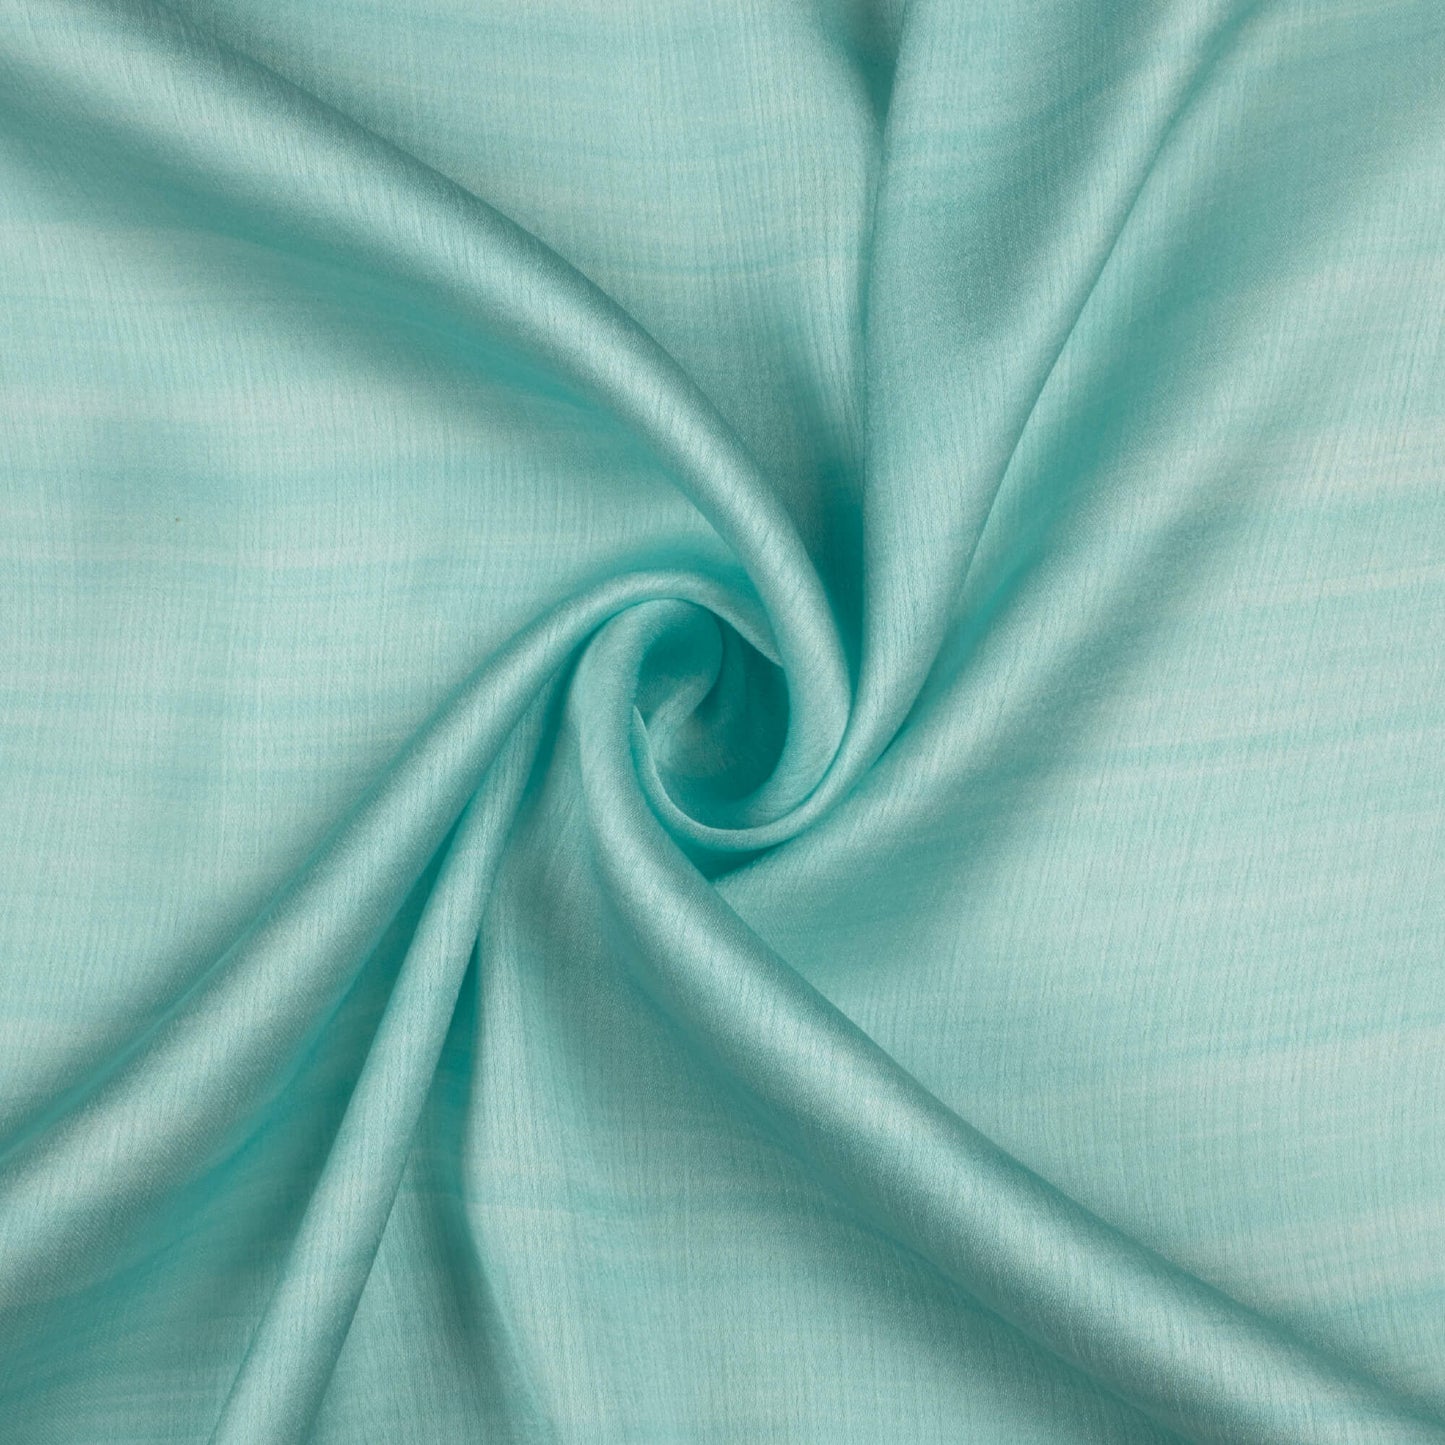 Blizzard Blue Texture Pattern Digital Print Chiffon Satin Fabric